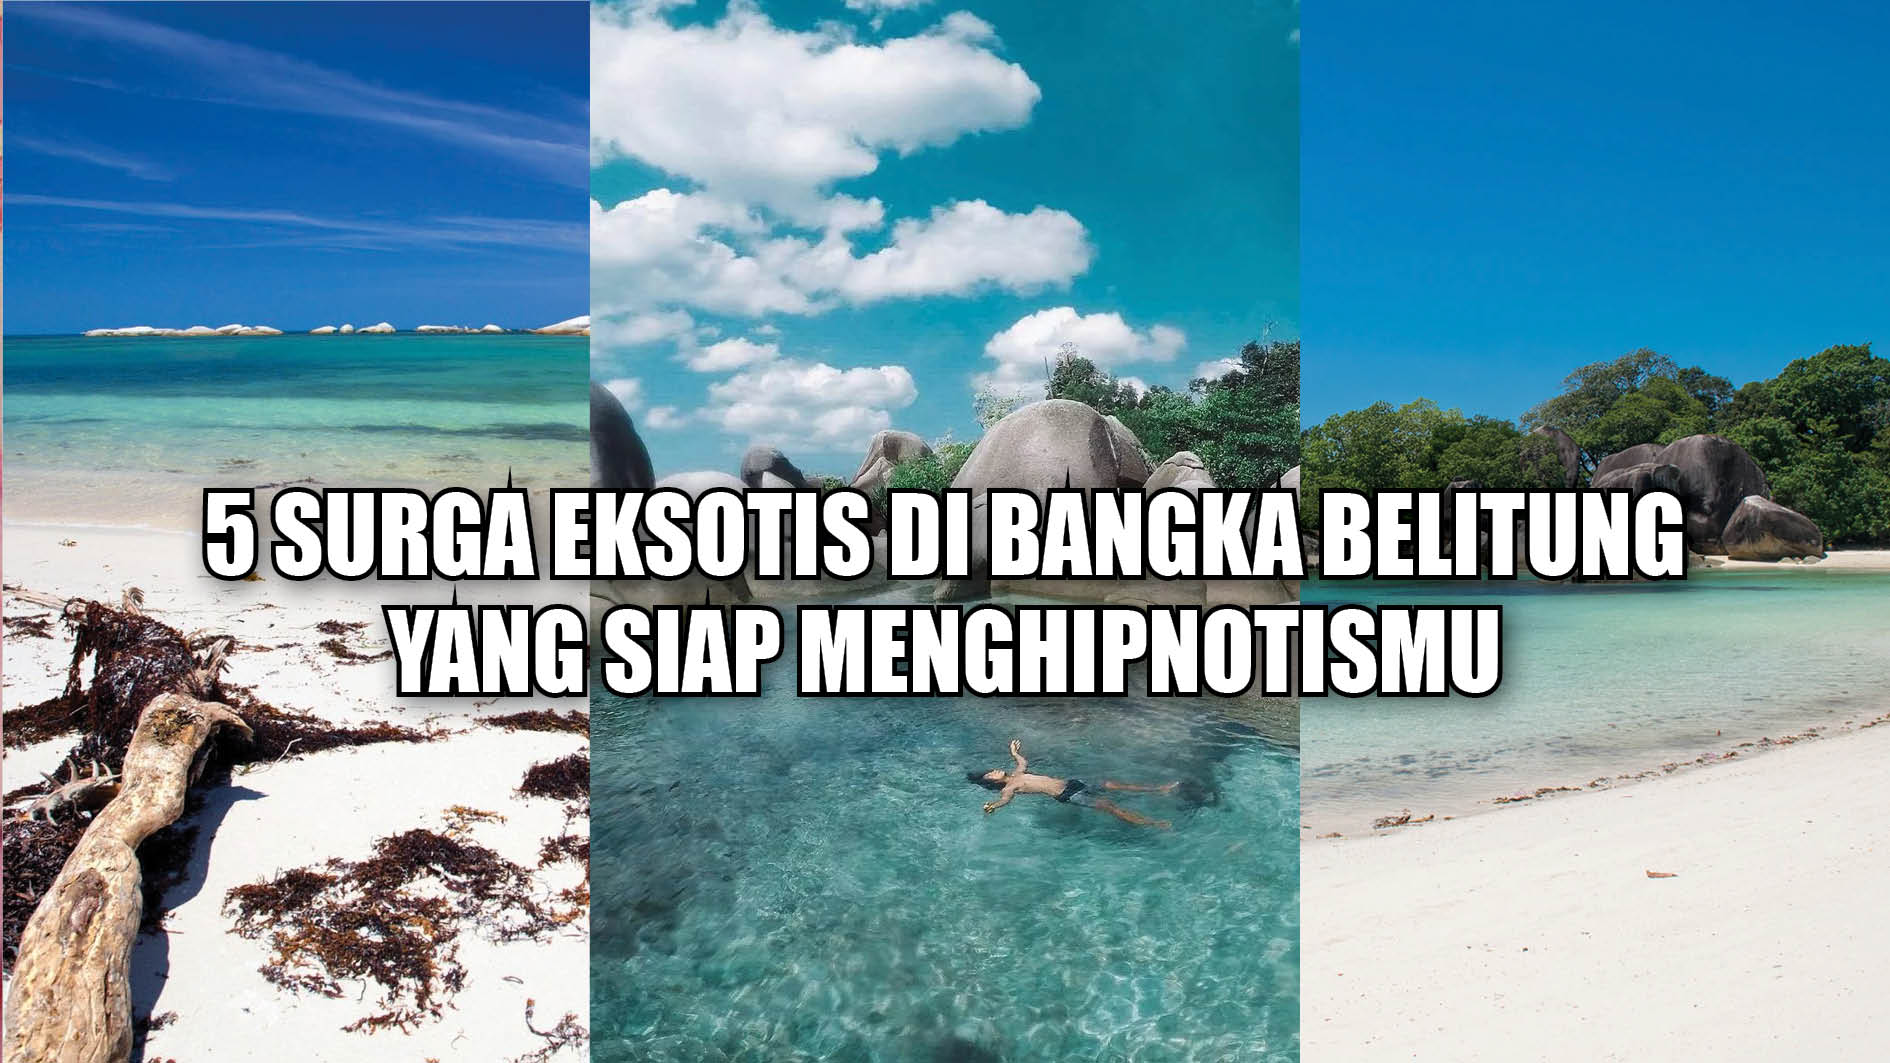 5 Surga Eksotis di Bangka Belitung yang Siap Menghipnotismu